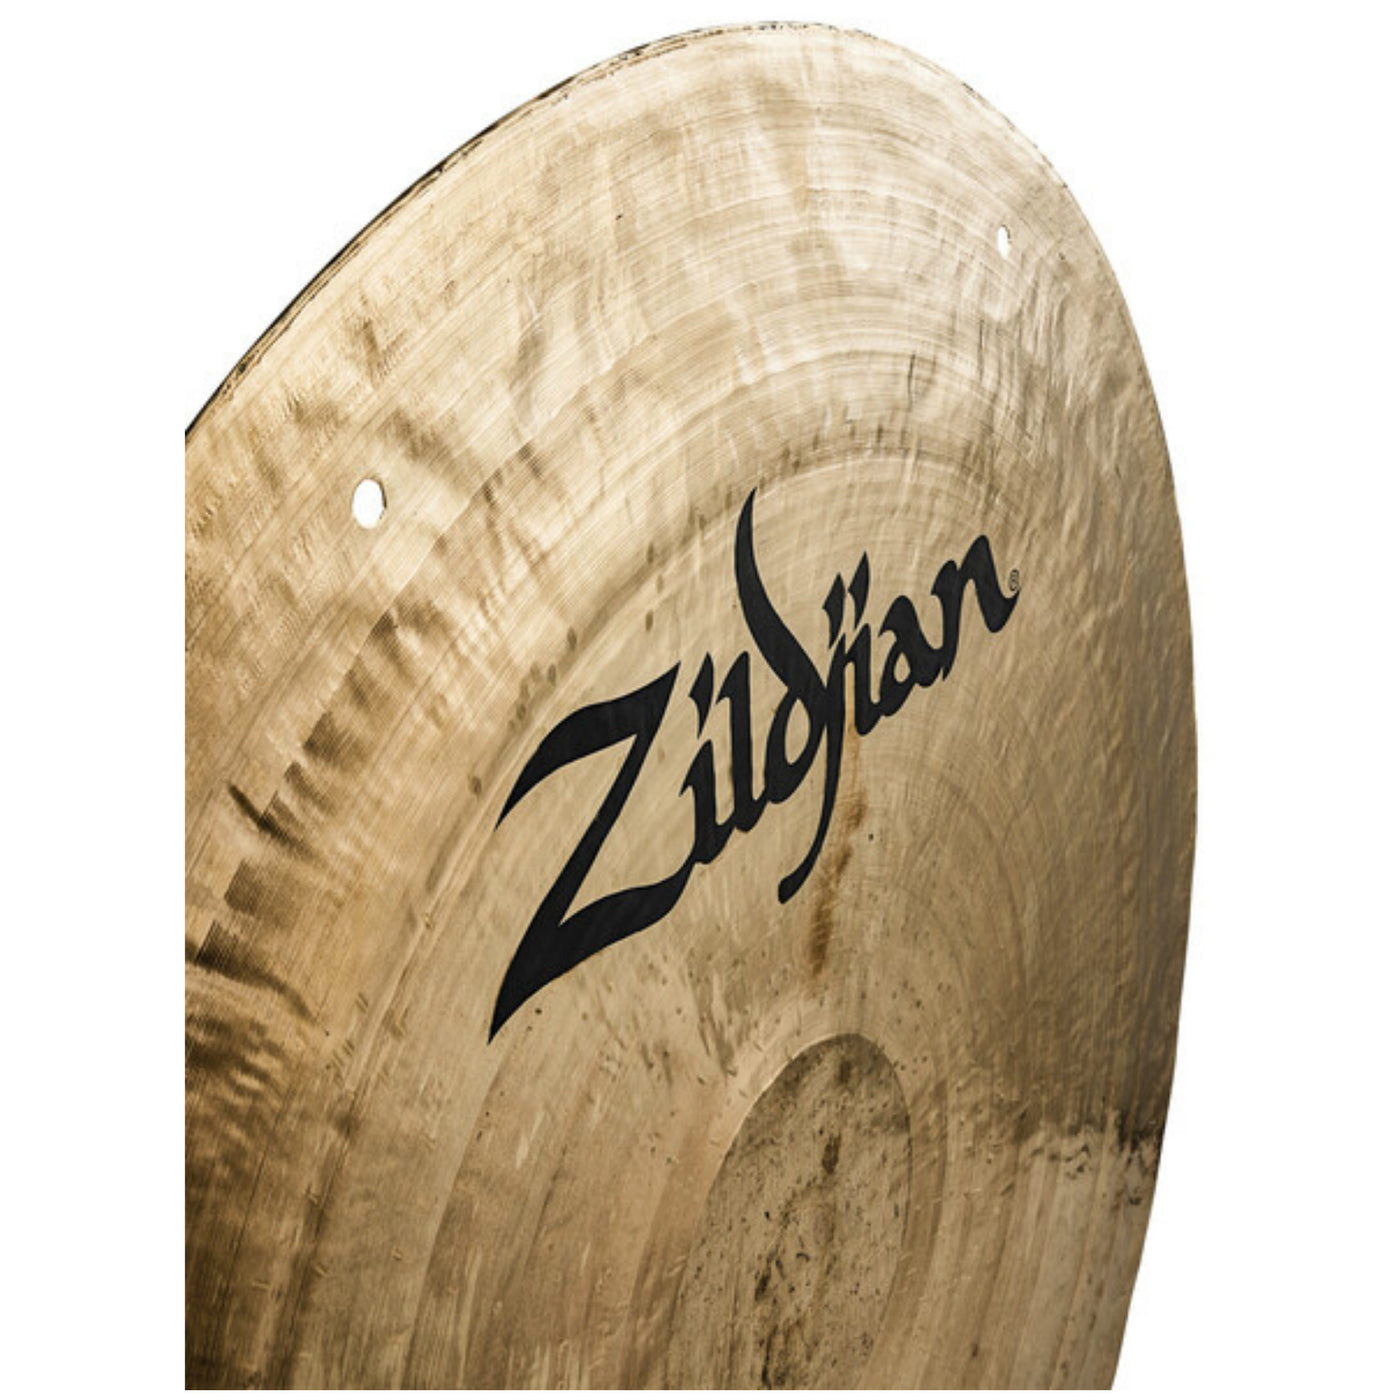 Zildjian Wind Gong 40-inch, Black Logo